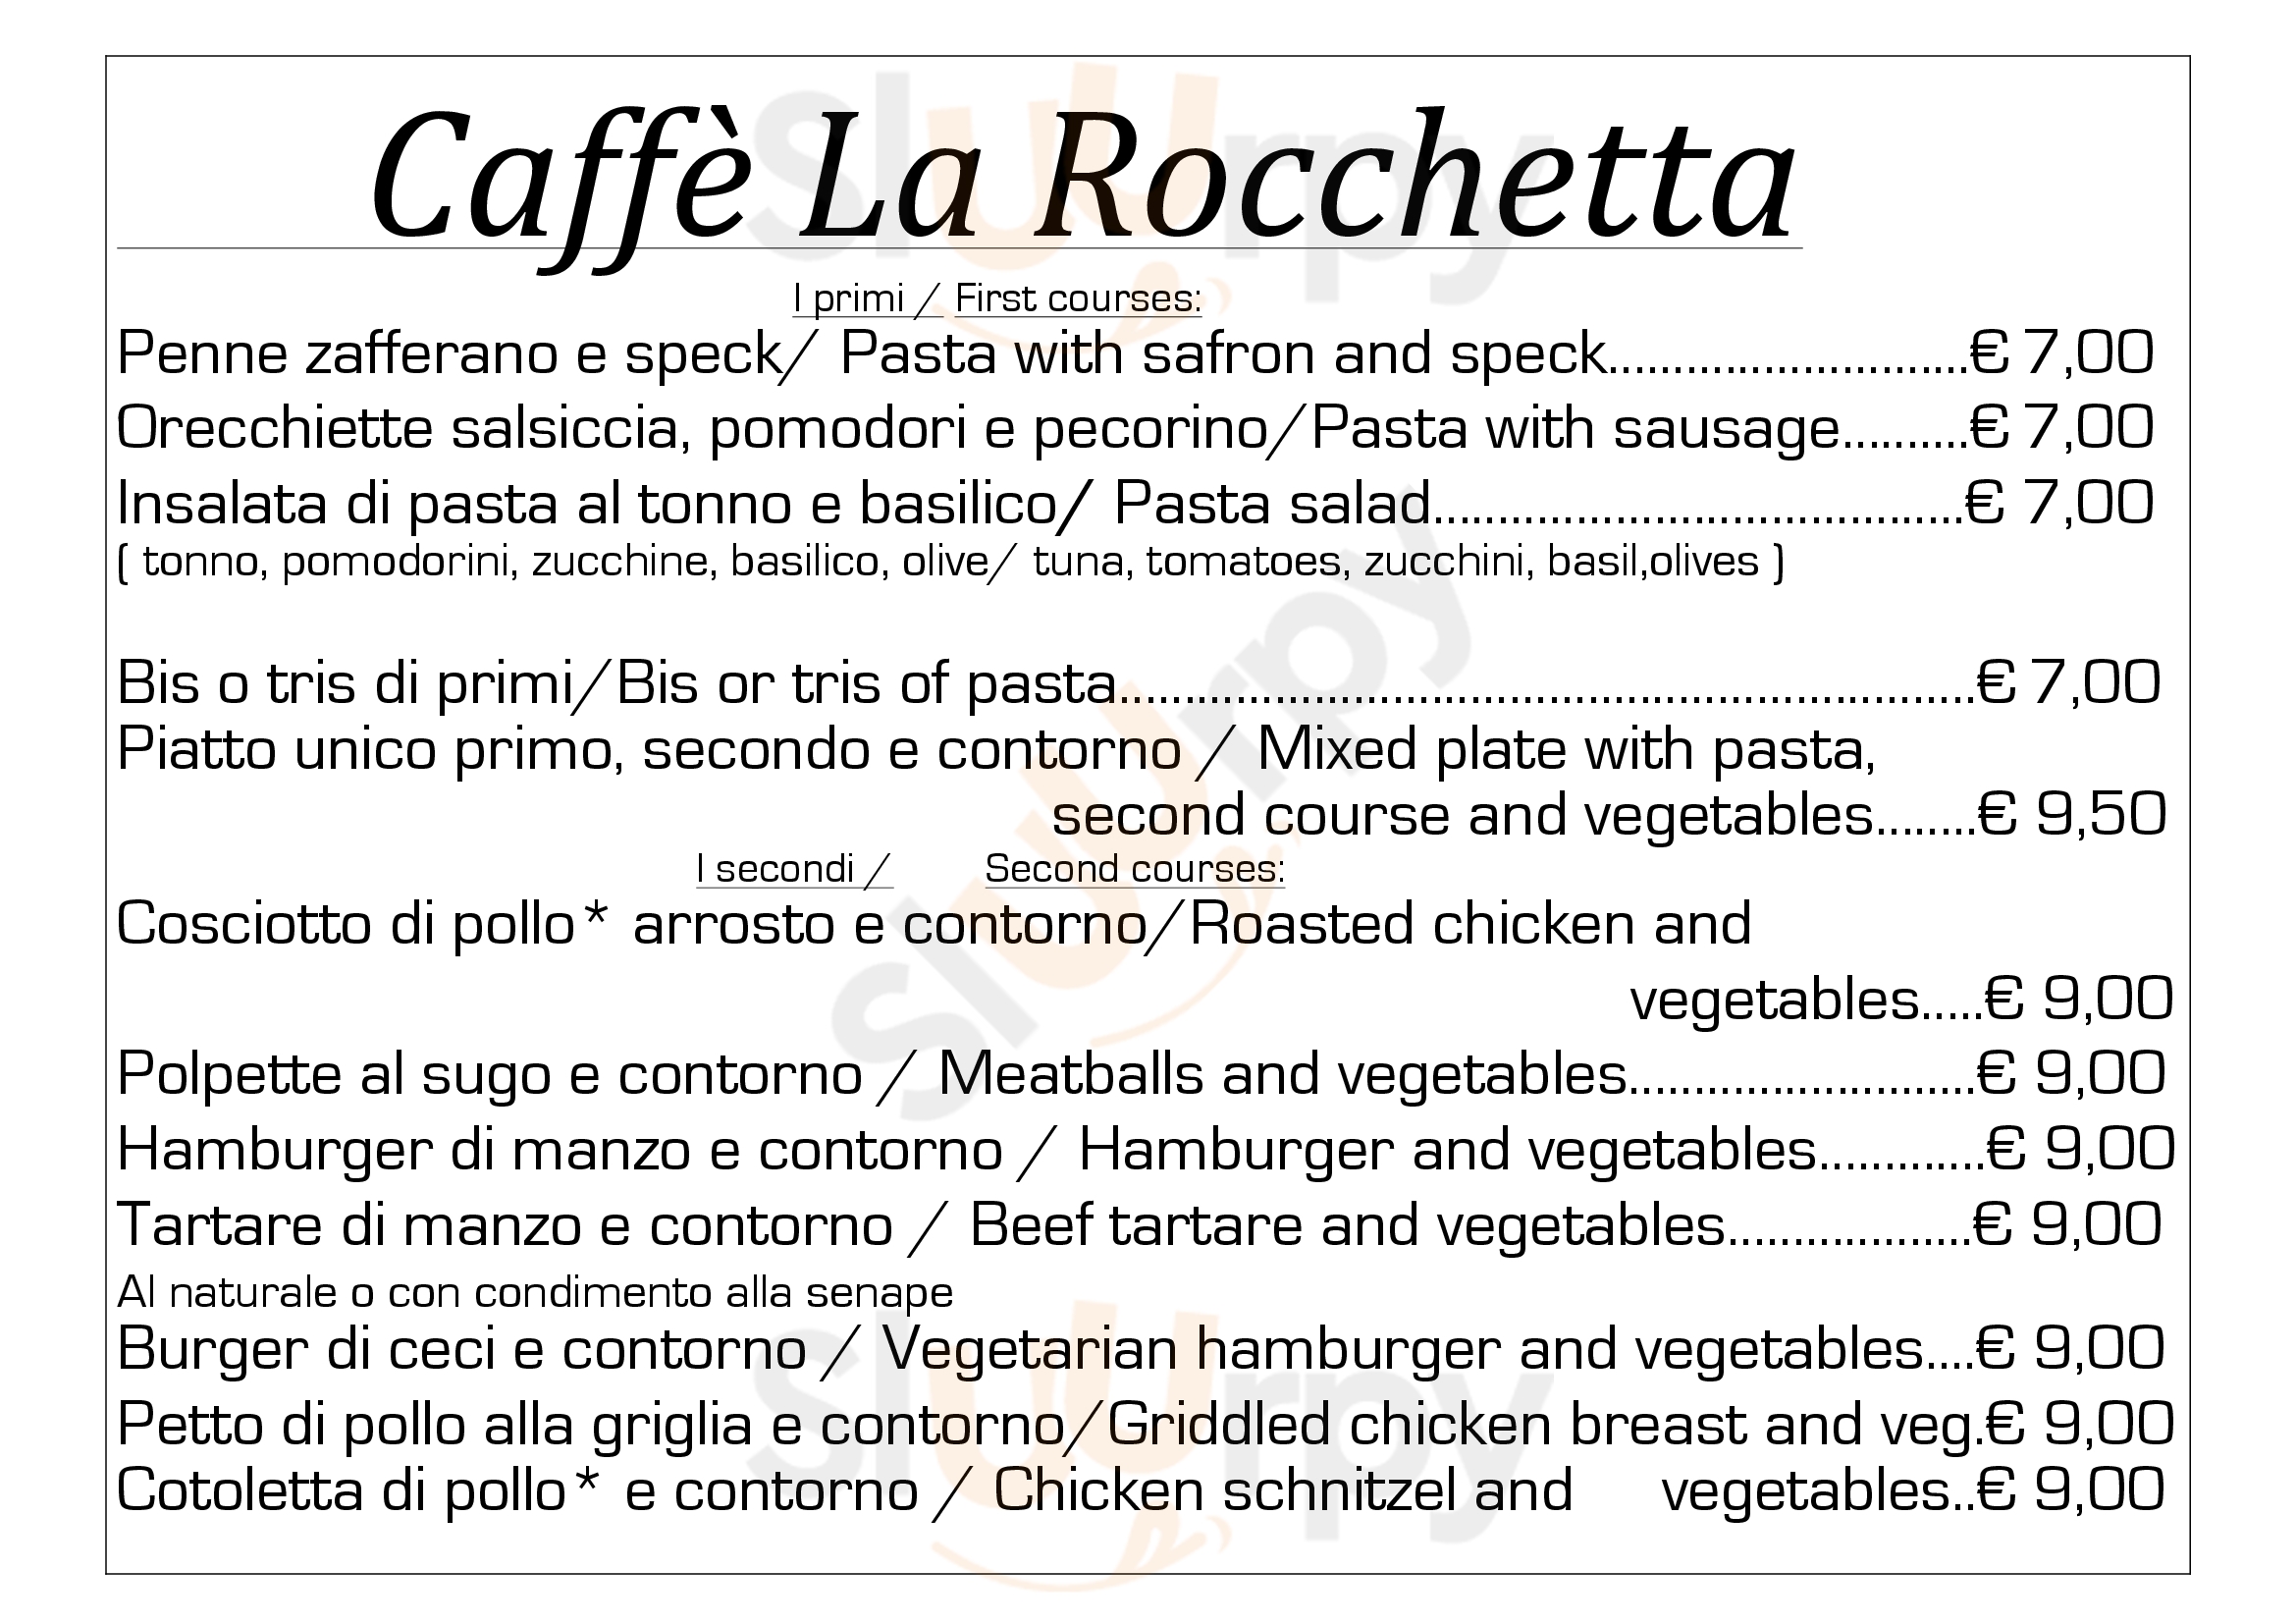 La Rocchetta Cafè Bistrot Milano menù 1 pagina